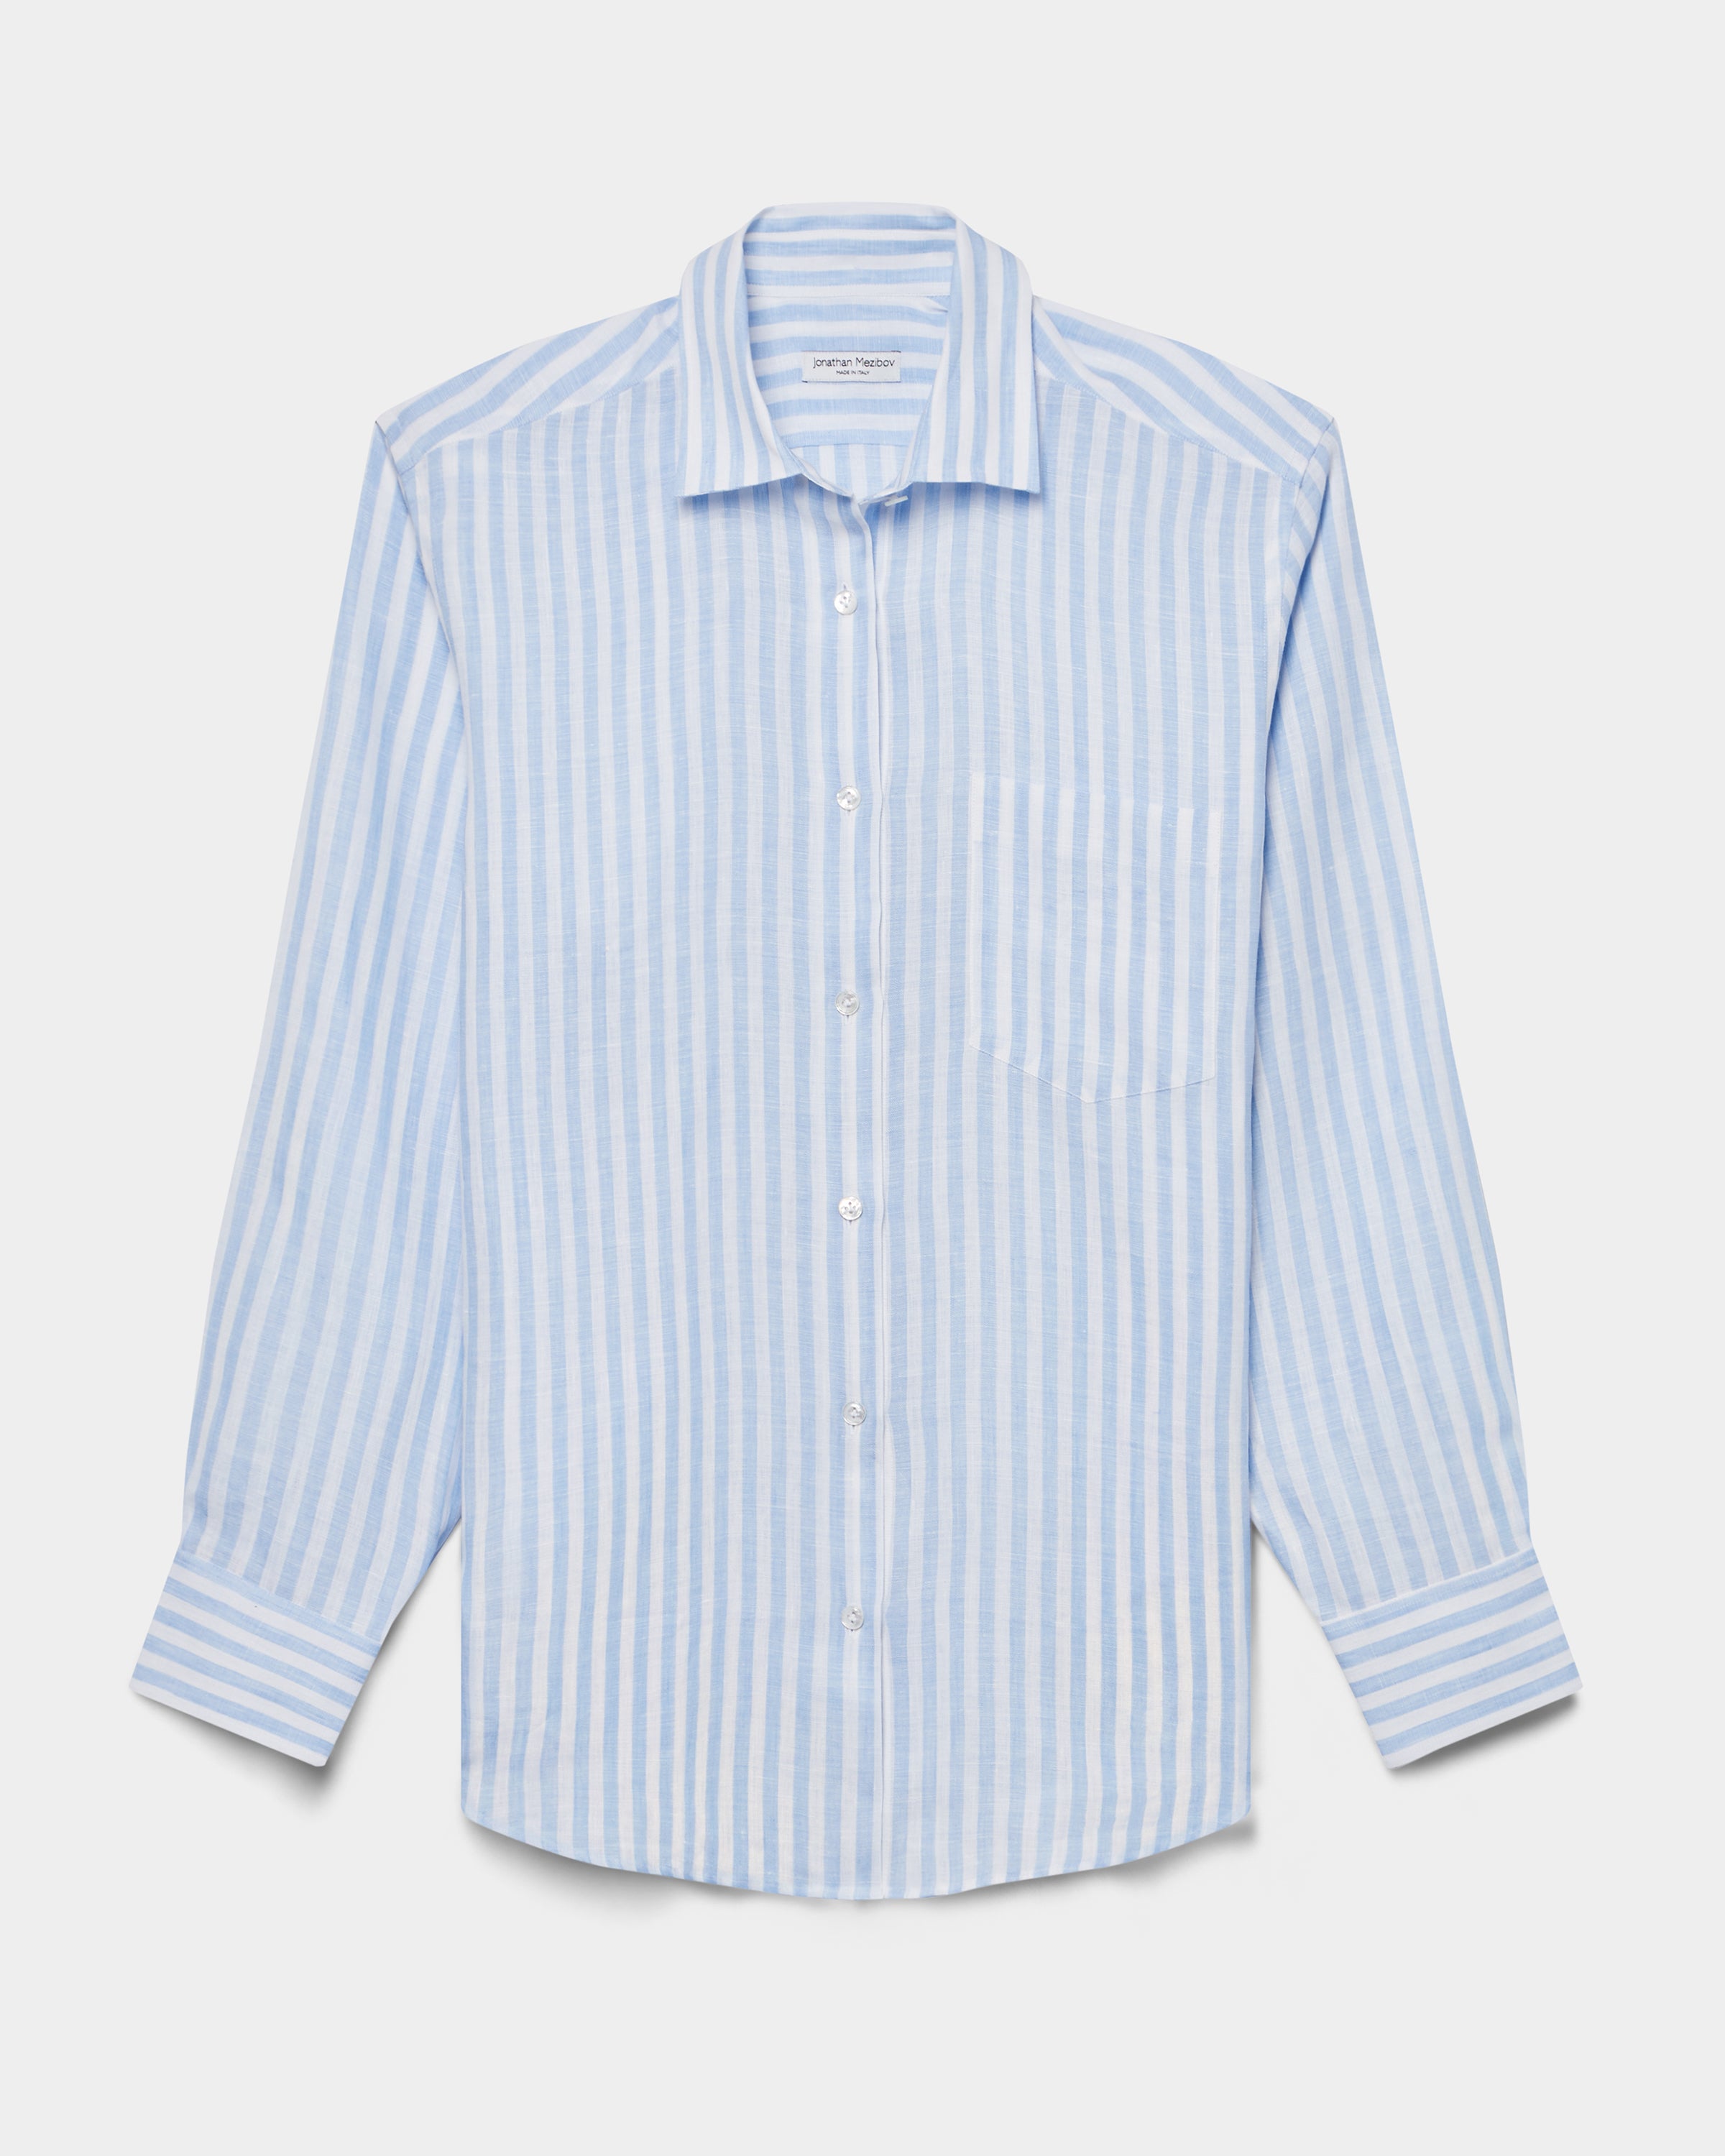 Fletcher Linen Shirt - Made to Order